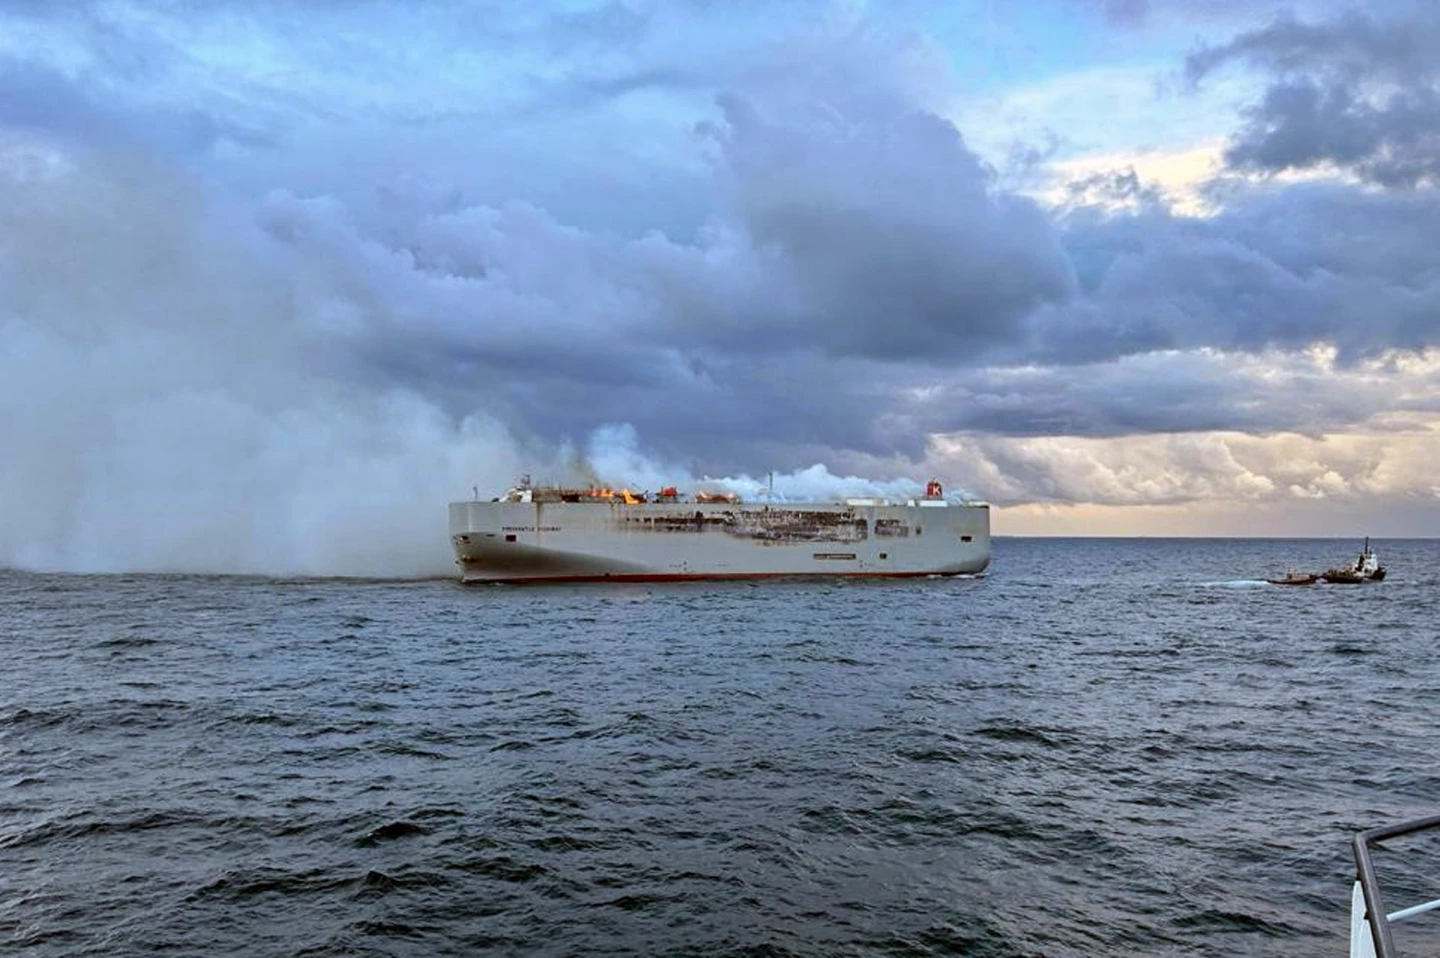 لقطات تظهر استعال سفينة شحن تنقل سيارات إلى مصر - الصورة من وكالات أنباء عالمية